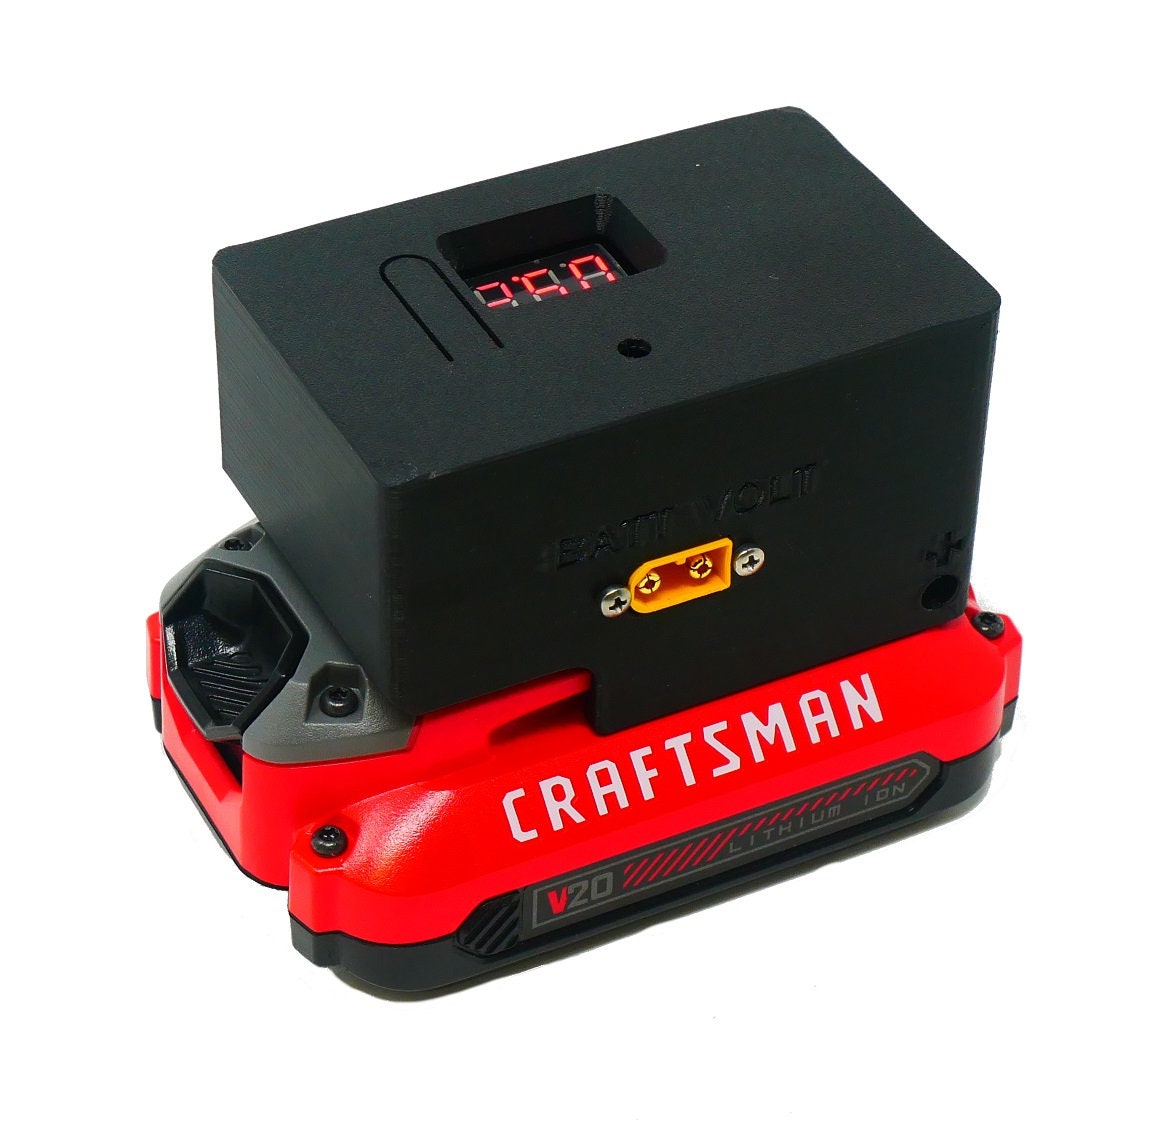 Craftsman 18v battery for sale  